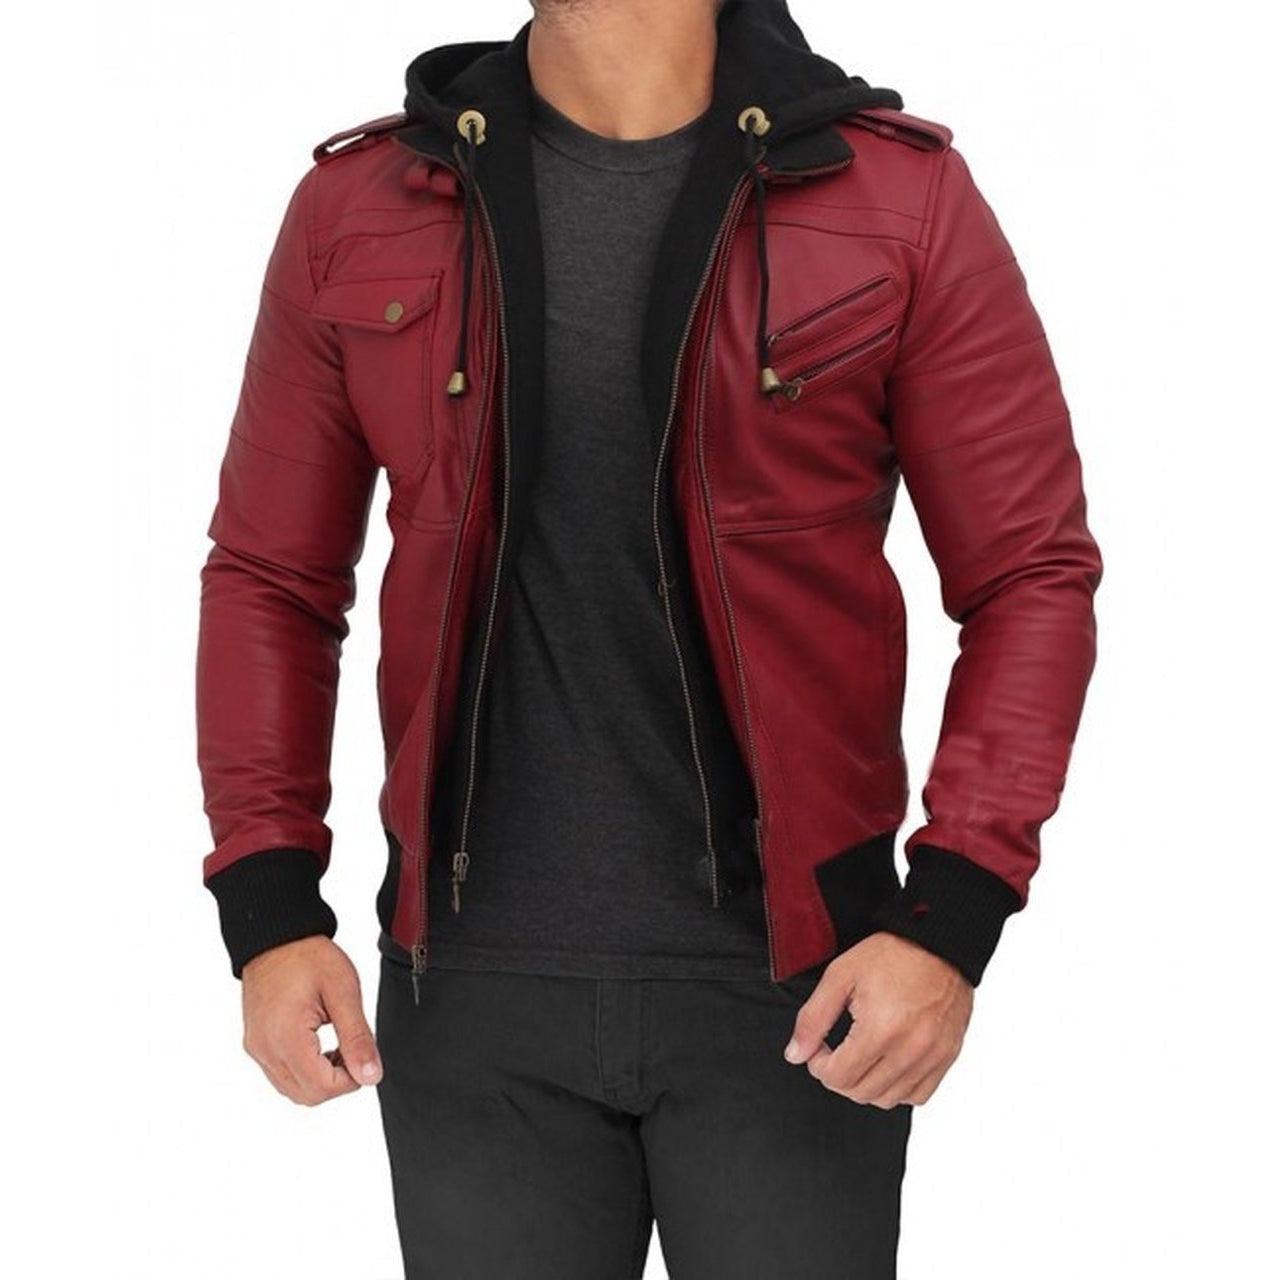 Maroon Hooded Bomber Jacket - Leather Jacket